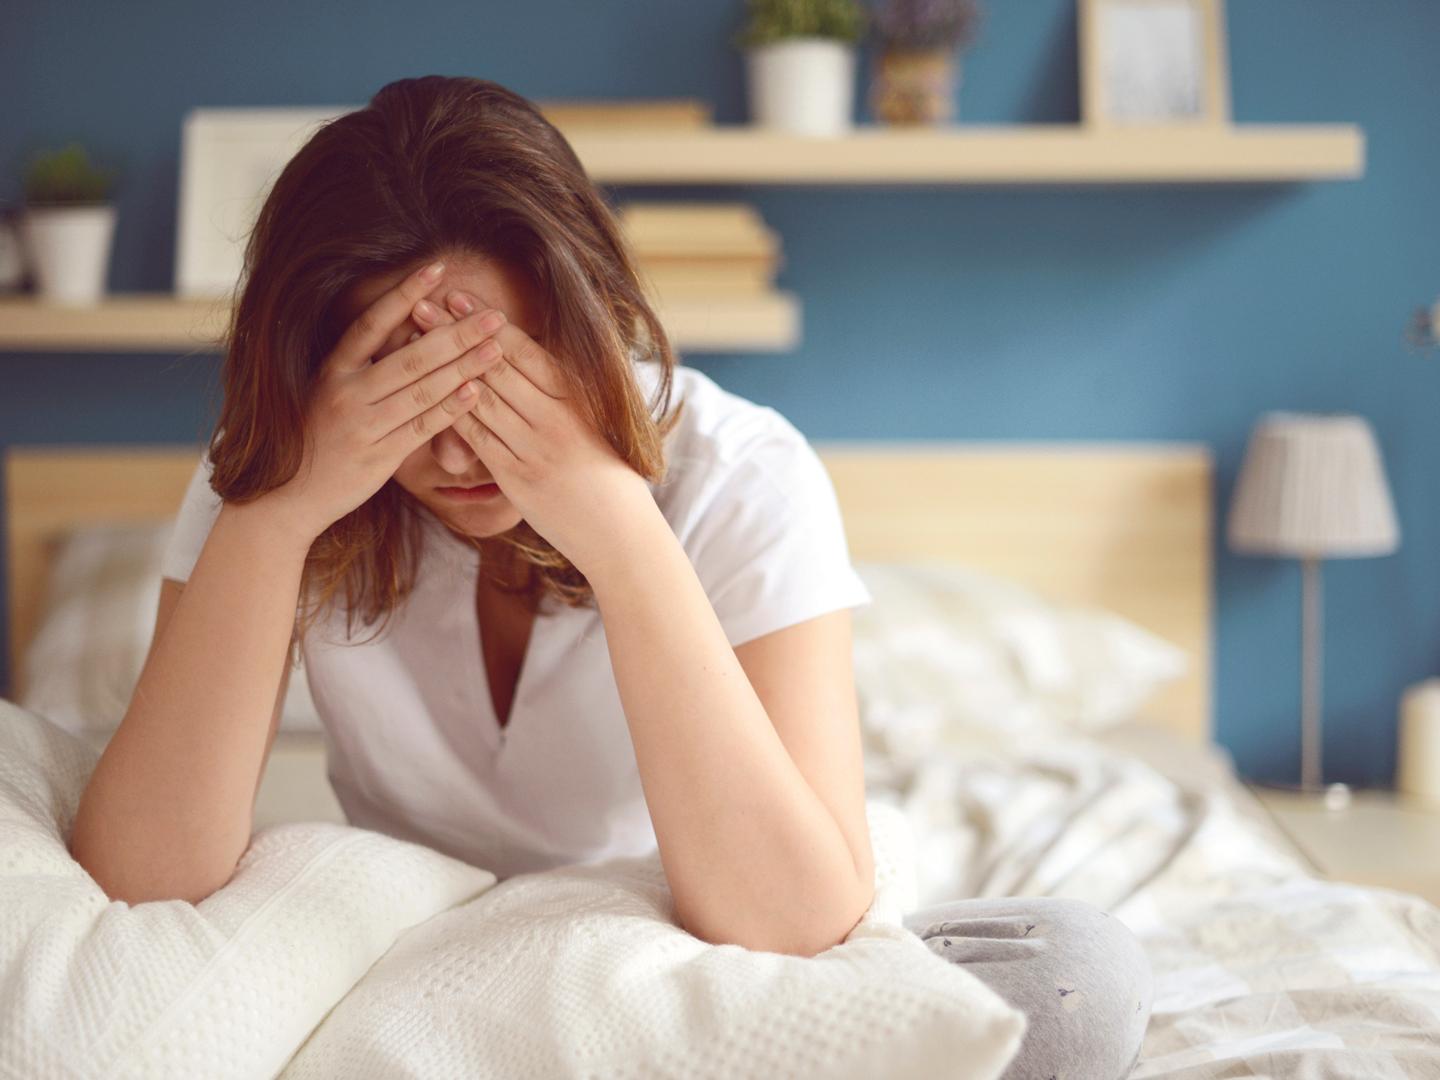 Šta može uzrokovati jutarnju glavobolju